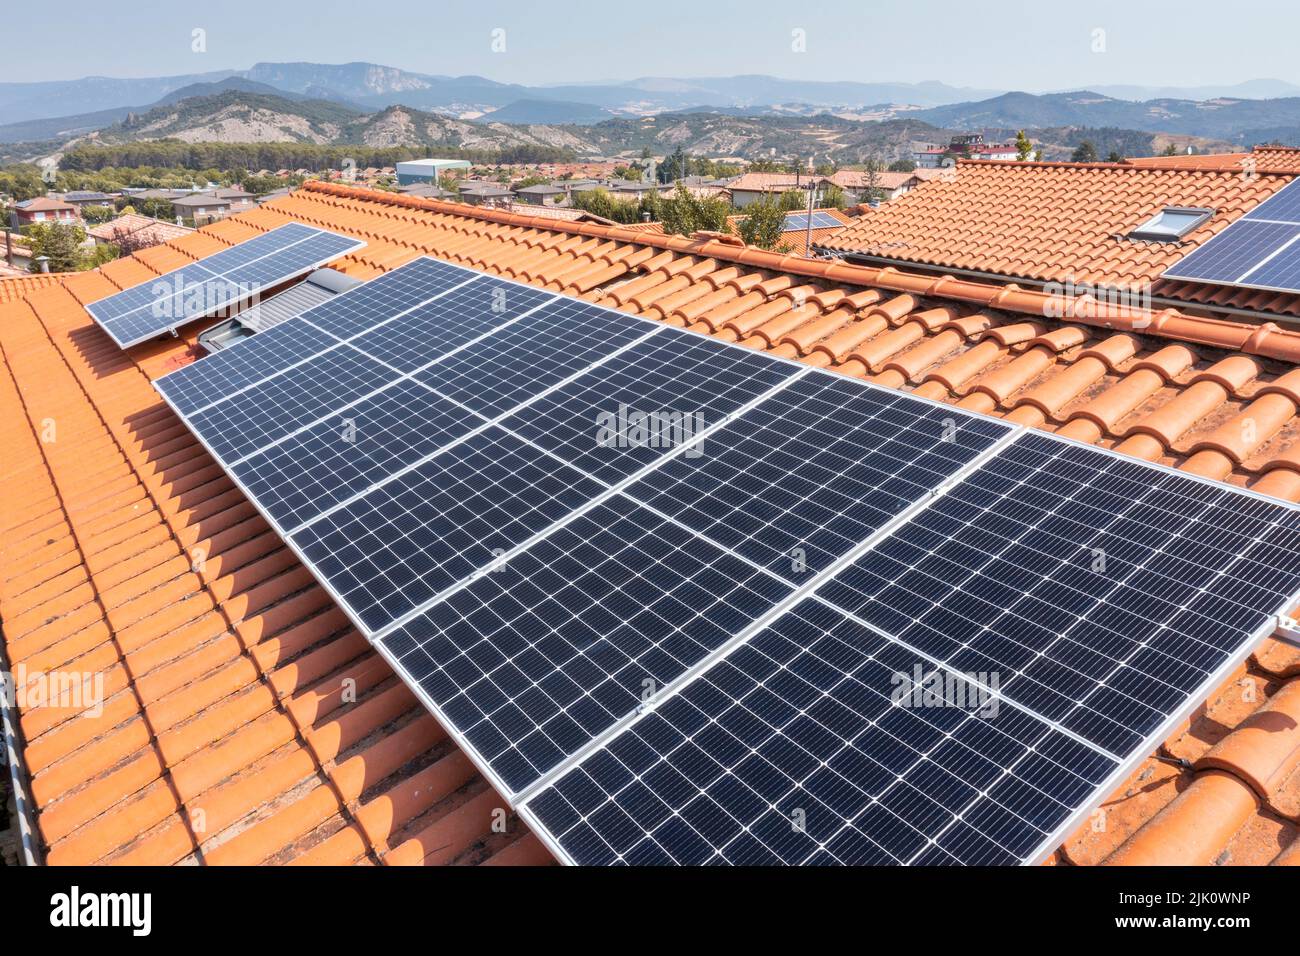 Panneaux solaires sur un toit. Vue de drone. Navarre, Espagne, Europe. Concepts d'environnement et de technologie. Banque D'Images